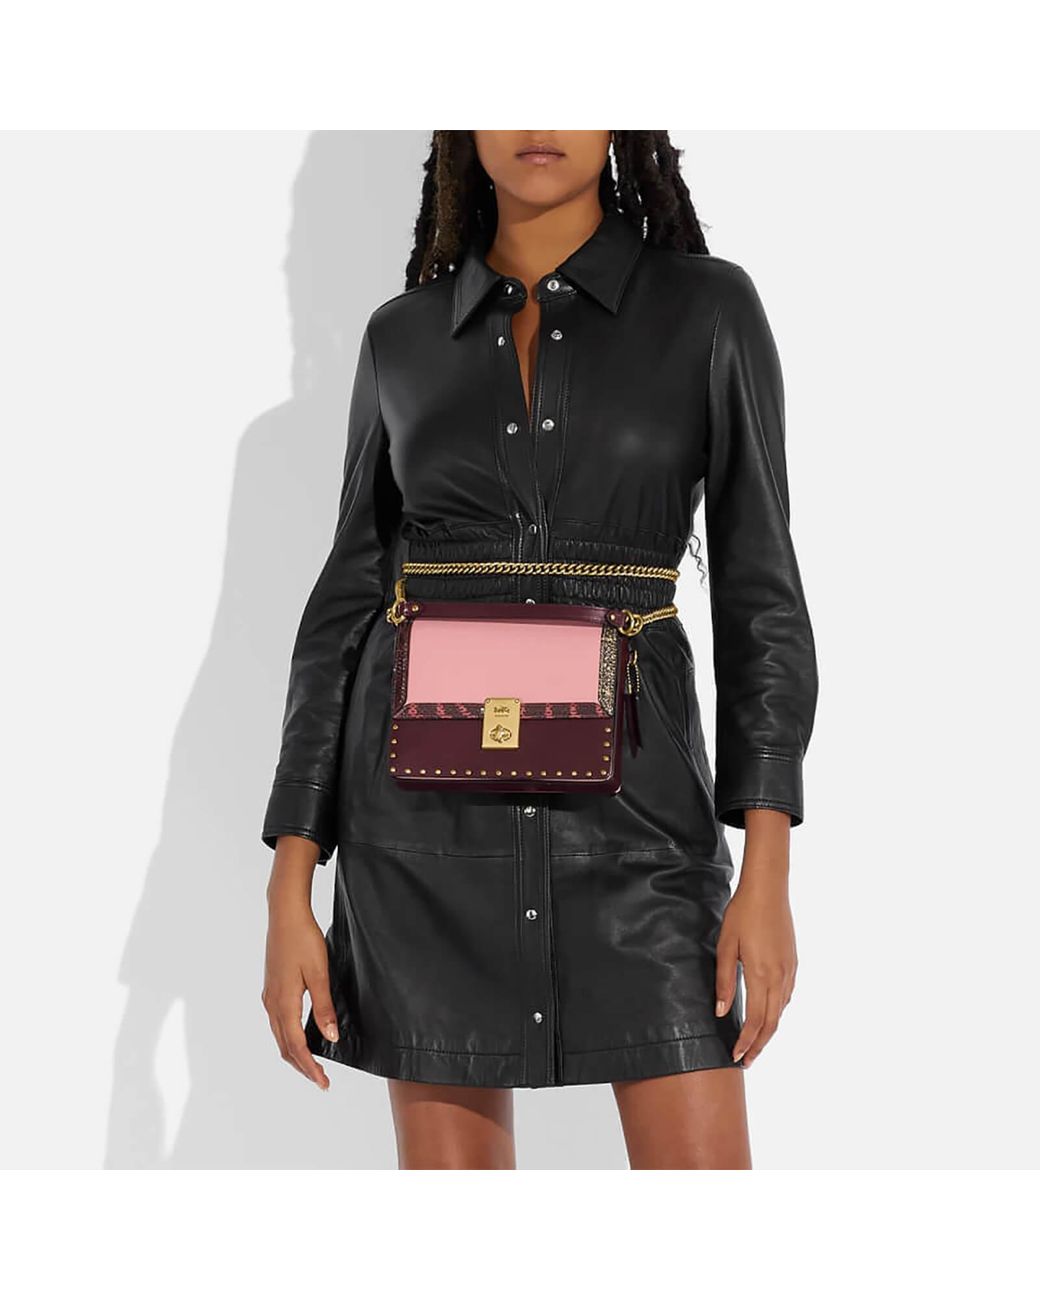 Jennifer Lopez's Little Black Studio Shoulder Bag Is on Sale at Coach